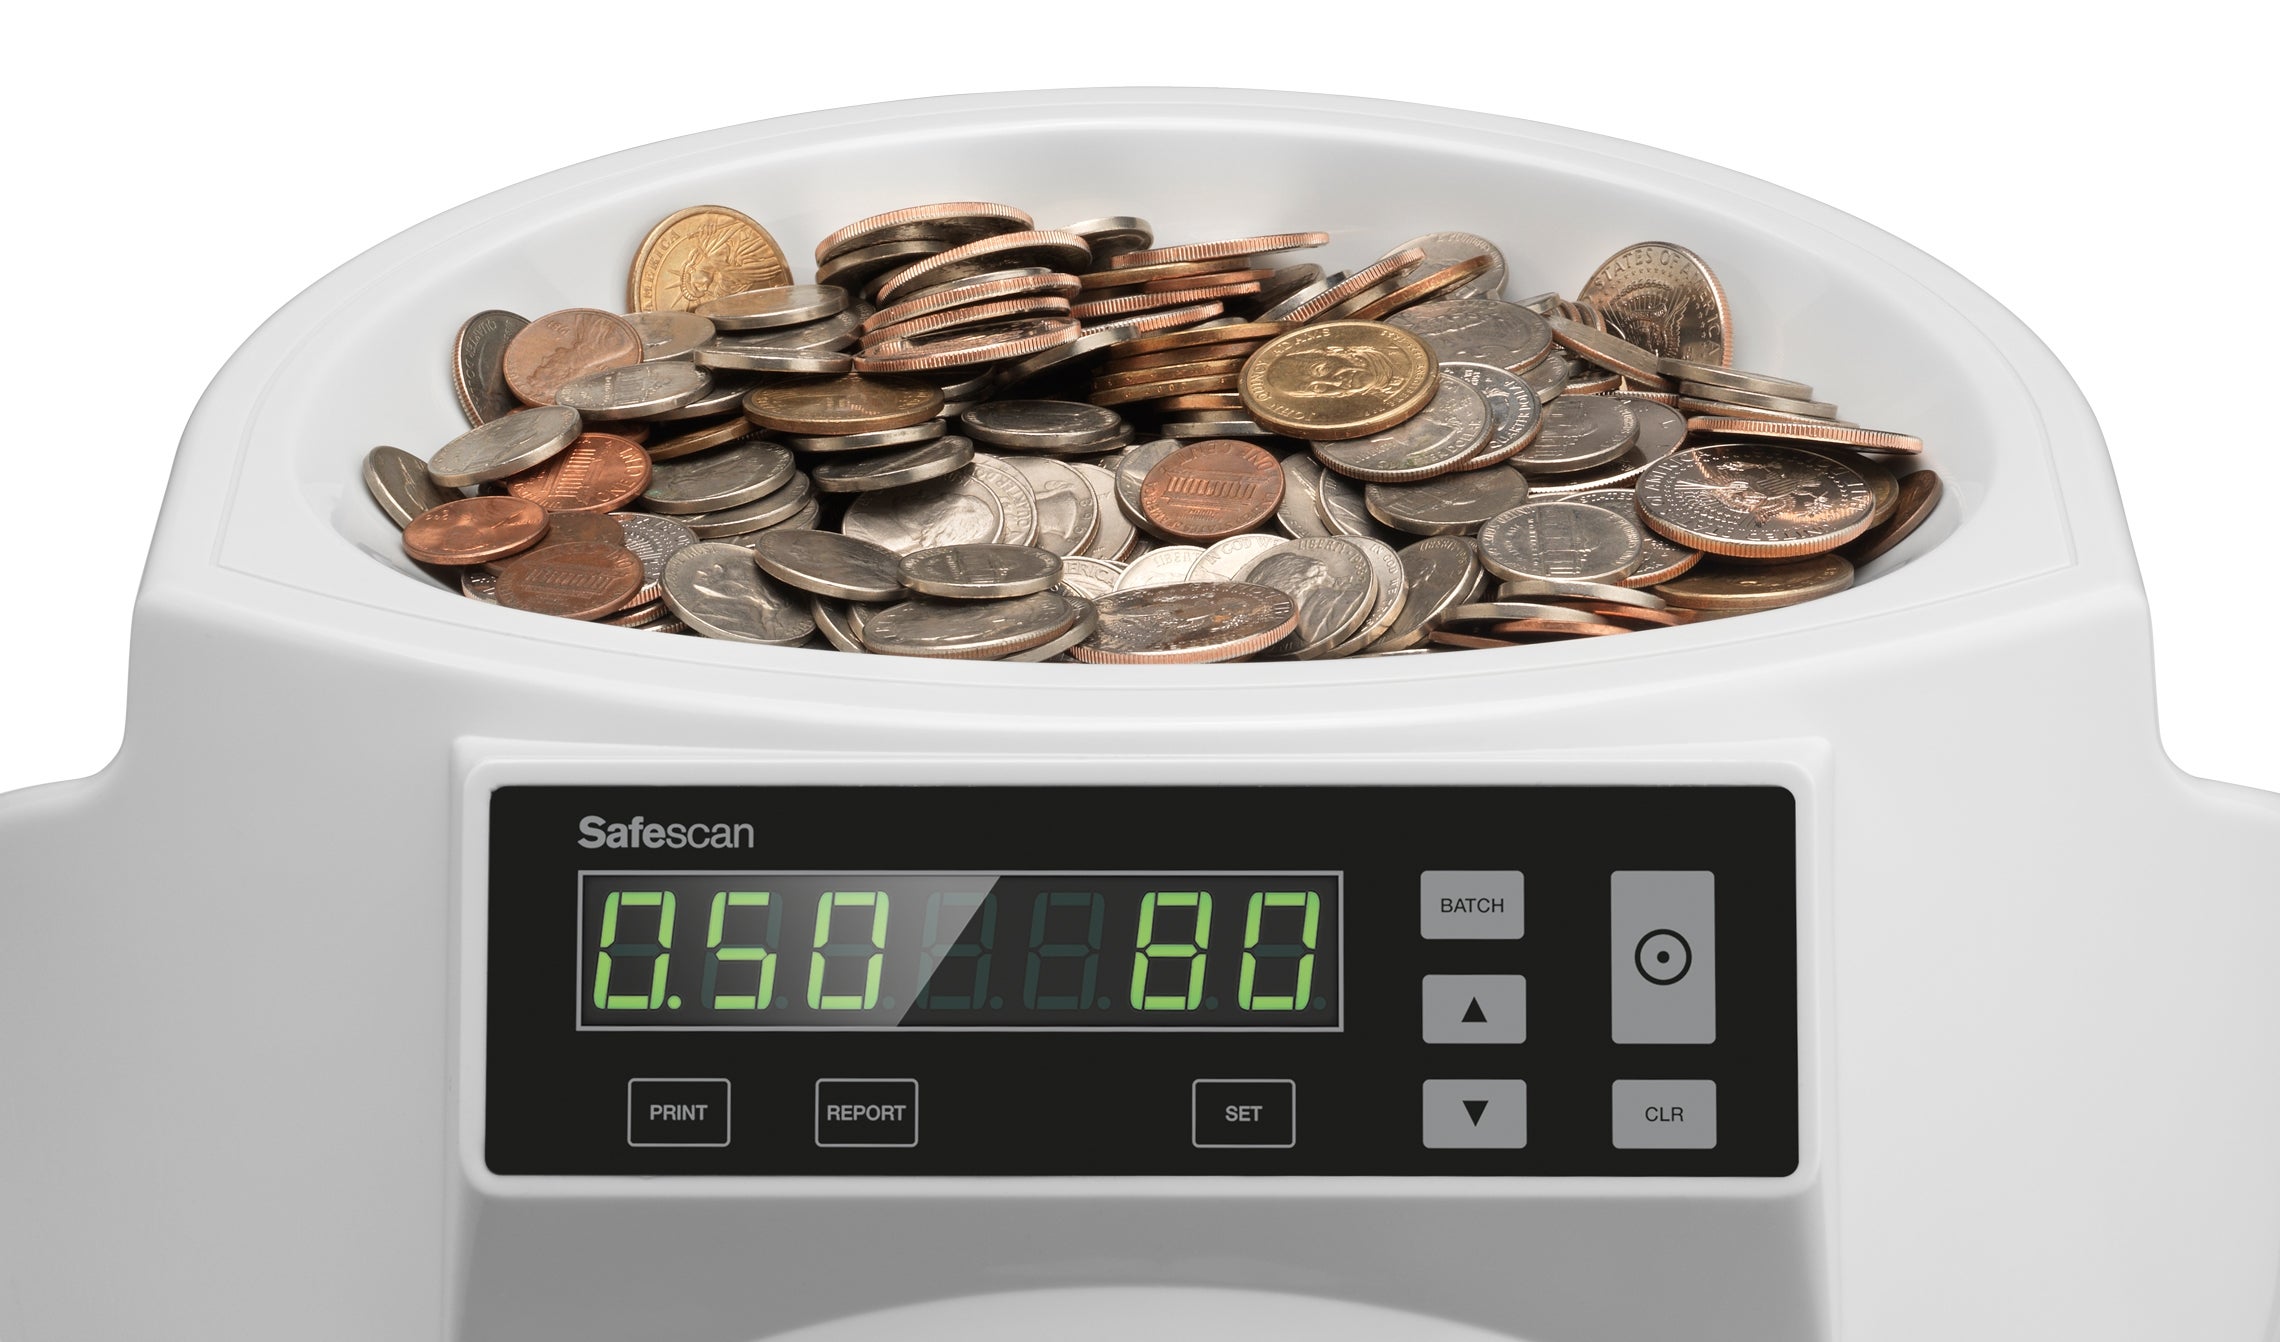 safescan-1250-usd-coin-counter-and-sorter